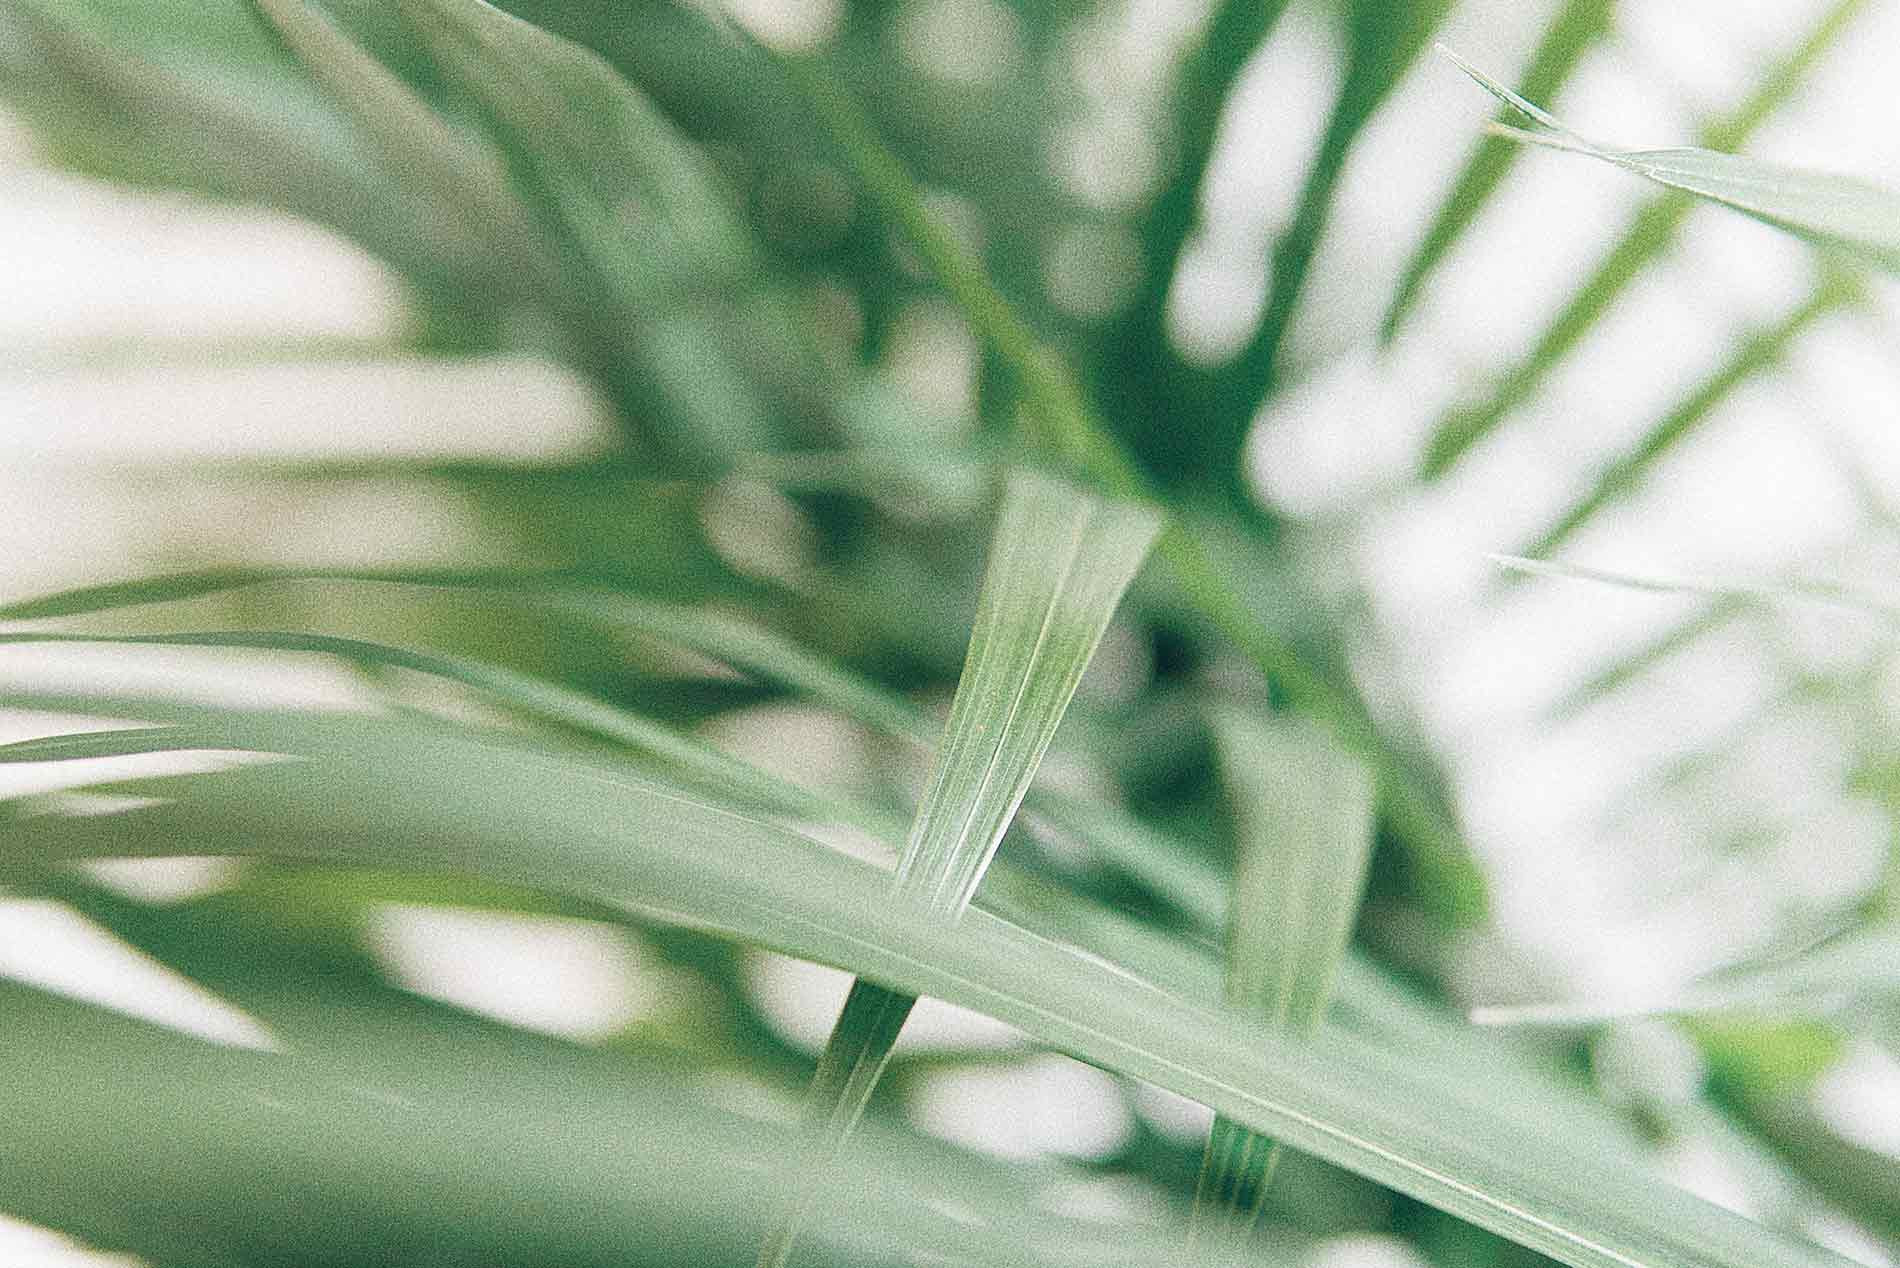 Acercamiento de las hojas de una planta de palma.